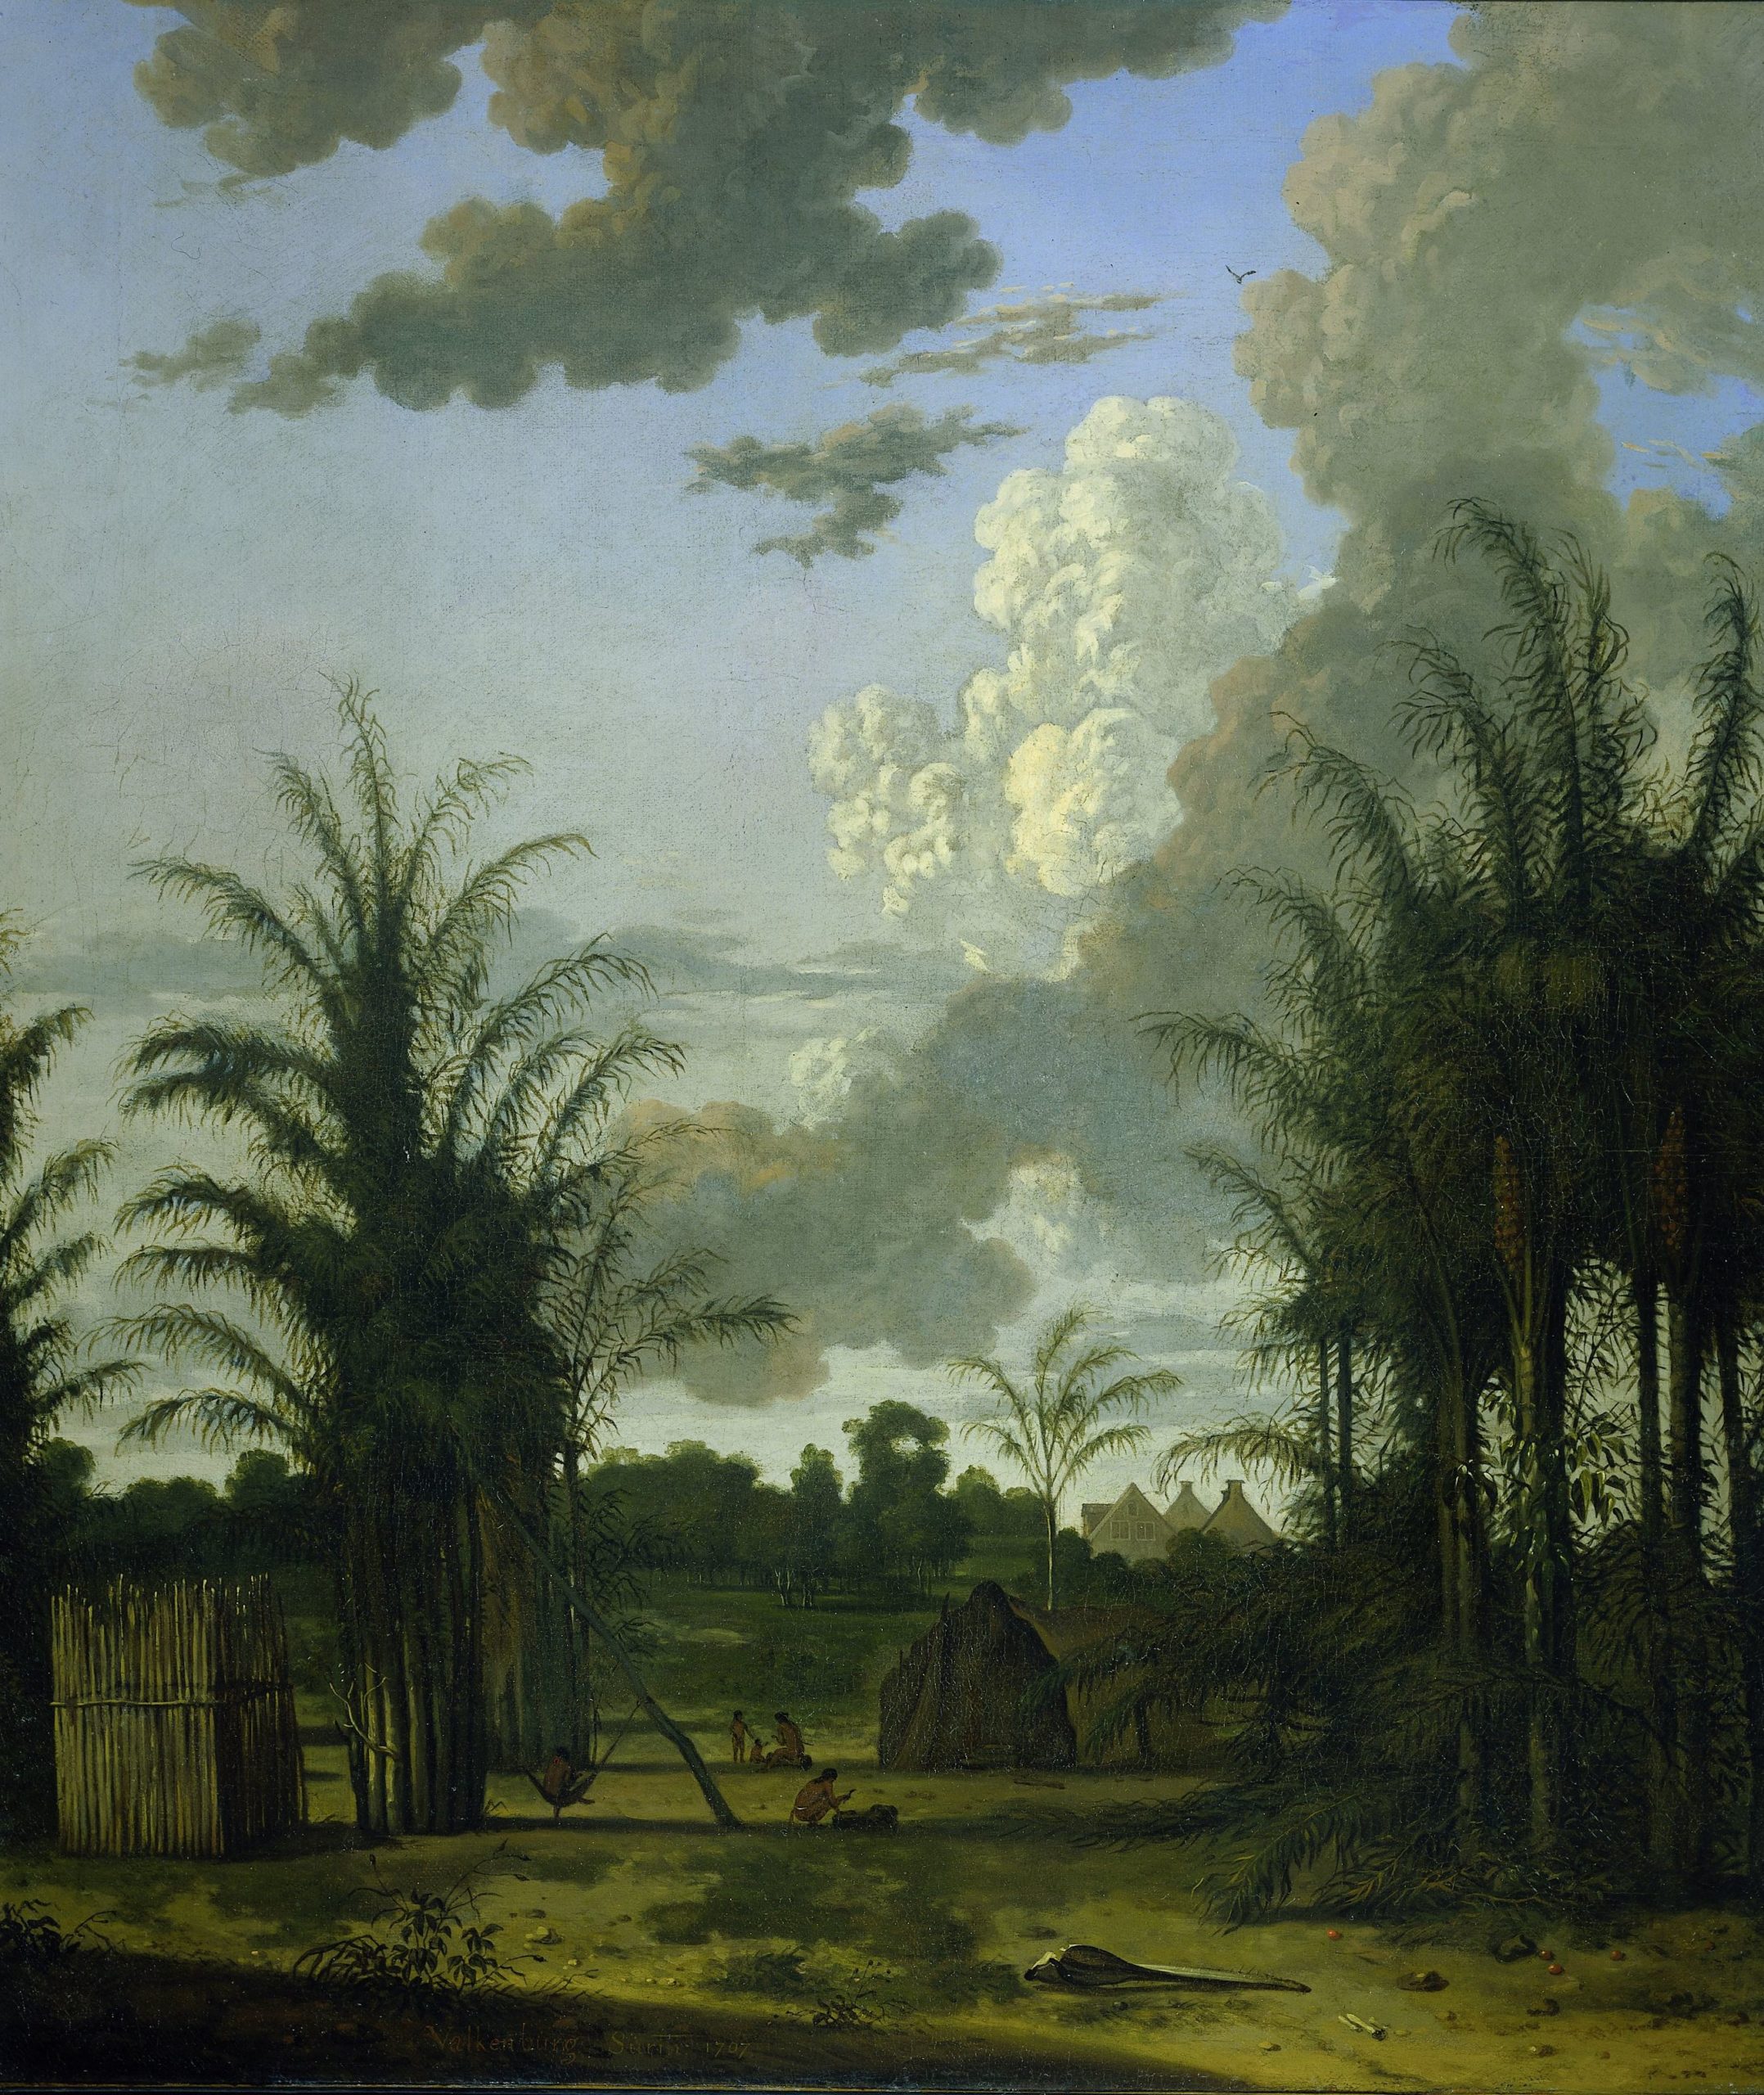 Sinaasappelplantage van de Amsterdamse regent Jonas Witsen in Suriname. Geschilderd door Dirk Valkenburg in 1707.